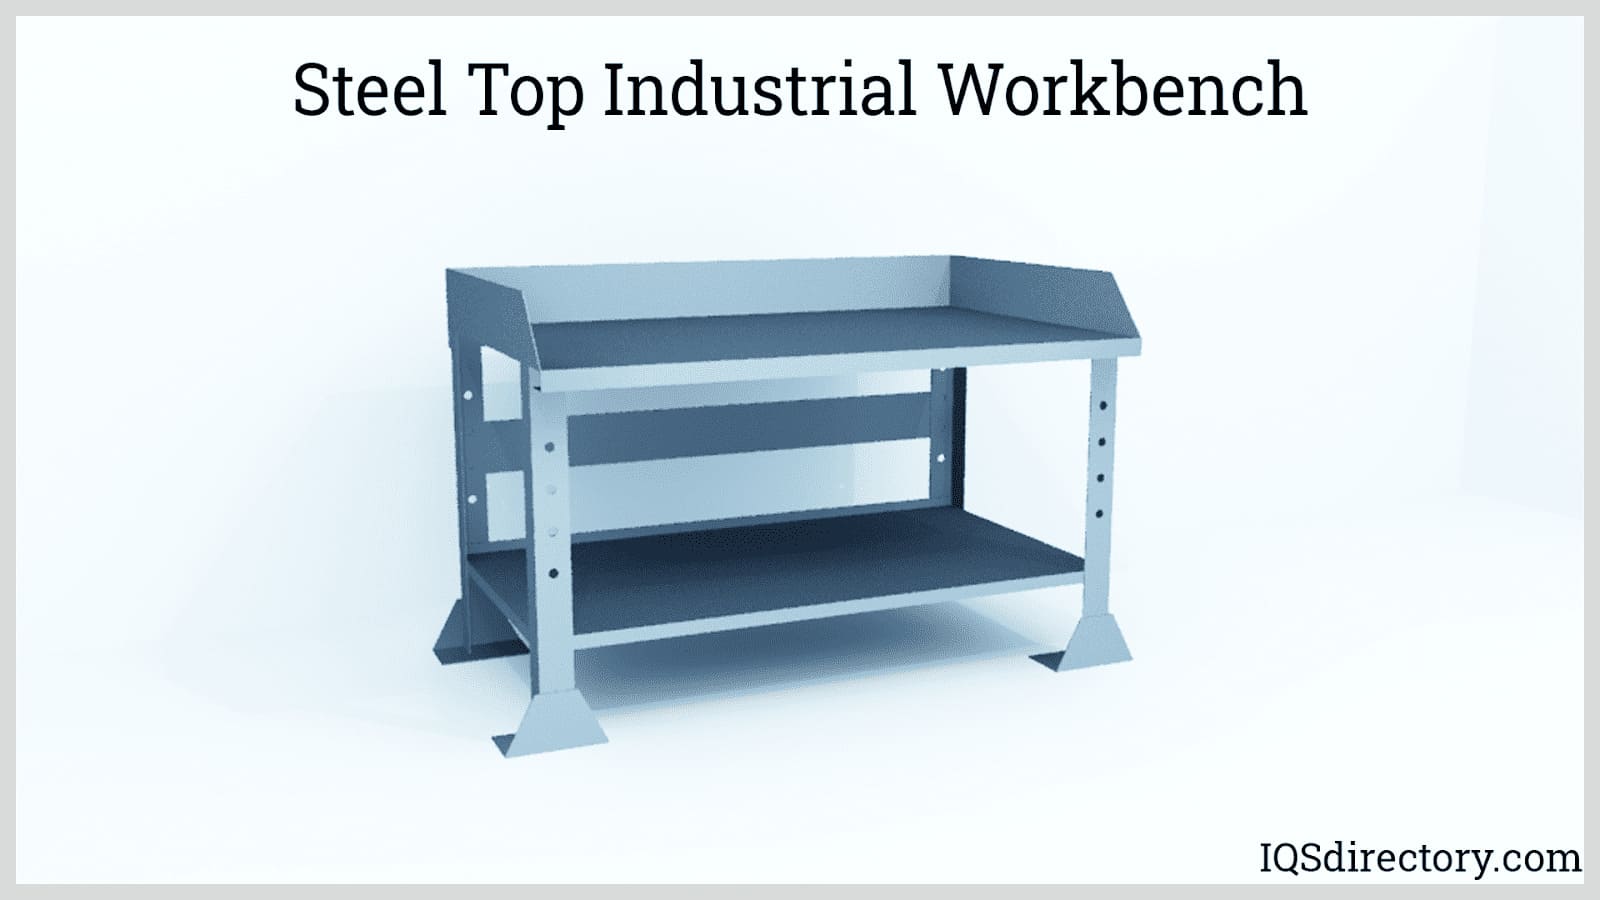 Steel Top Industrial Workbench